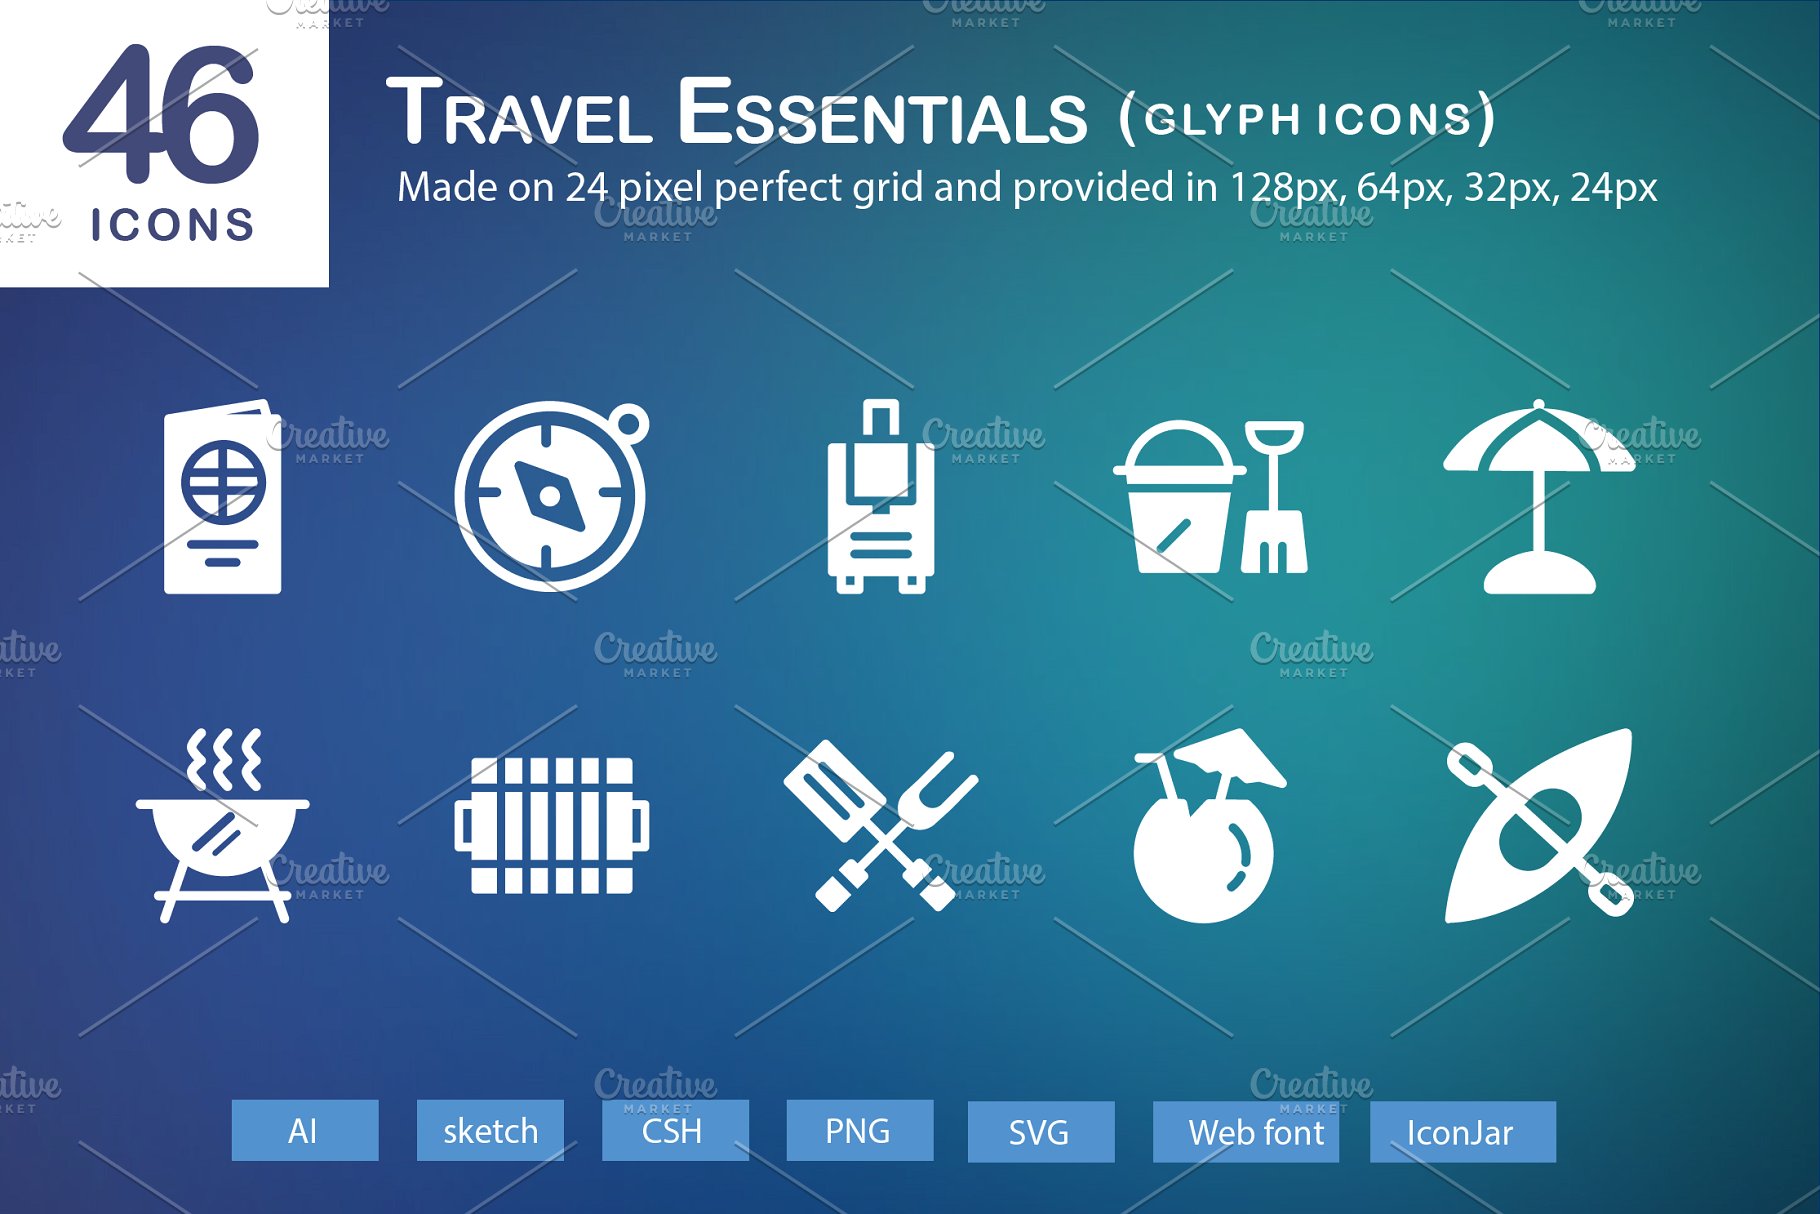 46个旅行必需品主题图标 46 Travel Essentials Glyph Icons插图